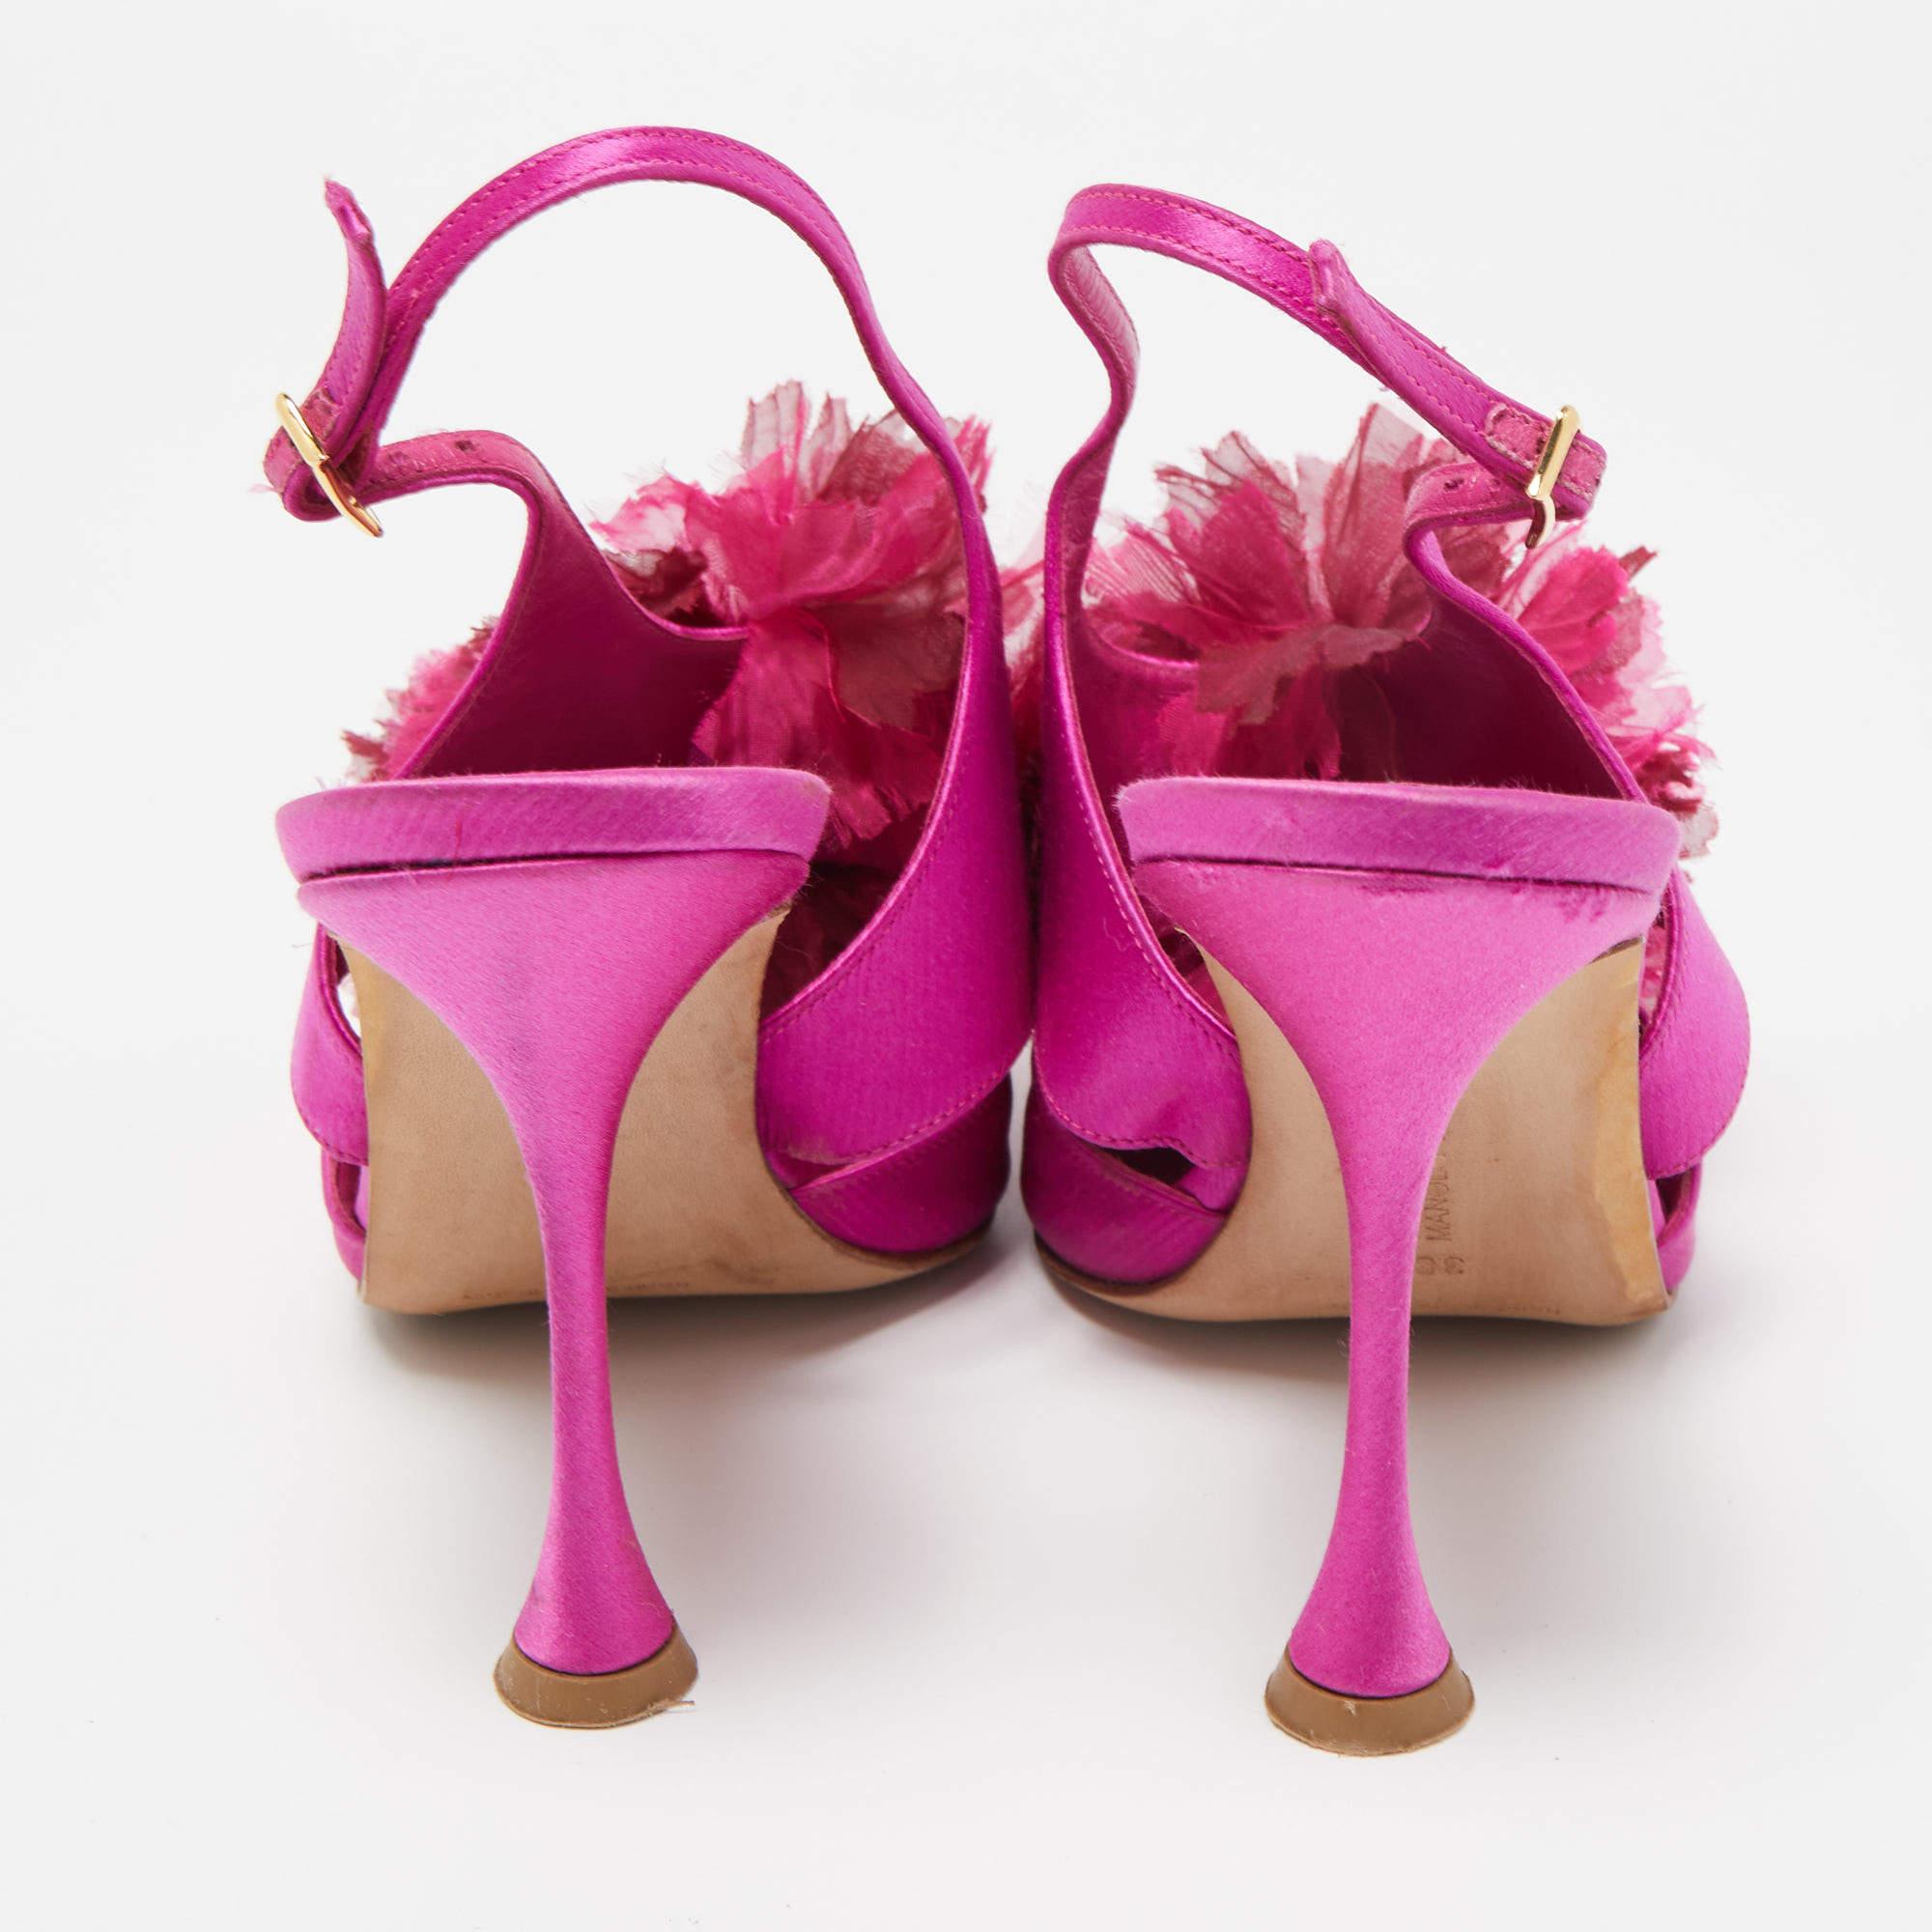 Manolo Blahnik Pink Satin Flower Embellished Ankle Strap Sandals Size 38 4